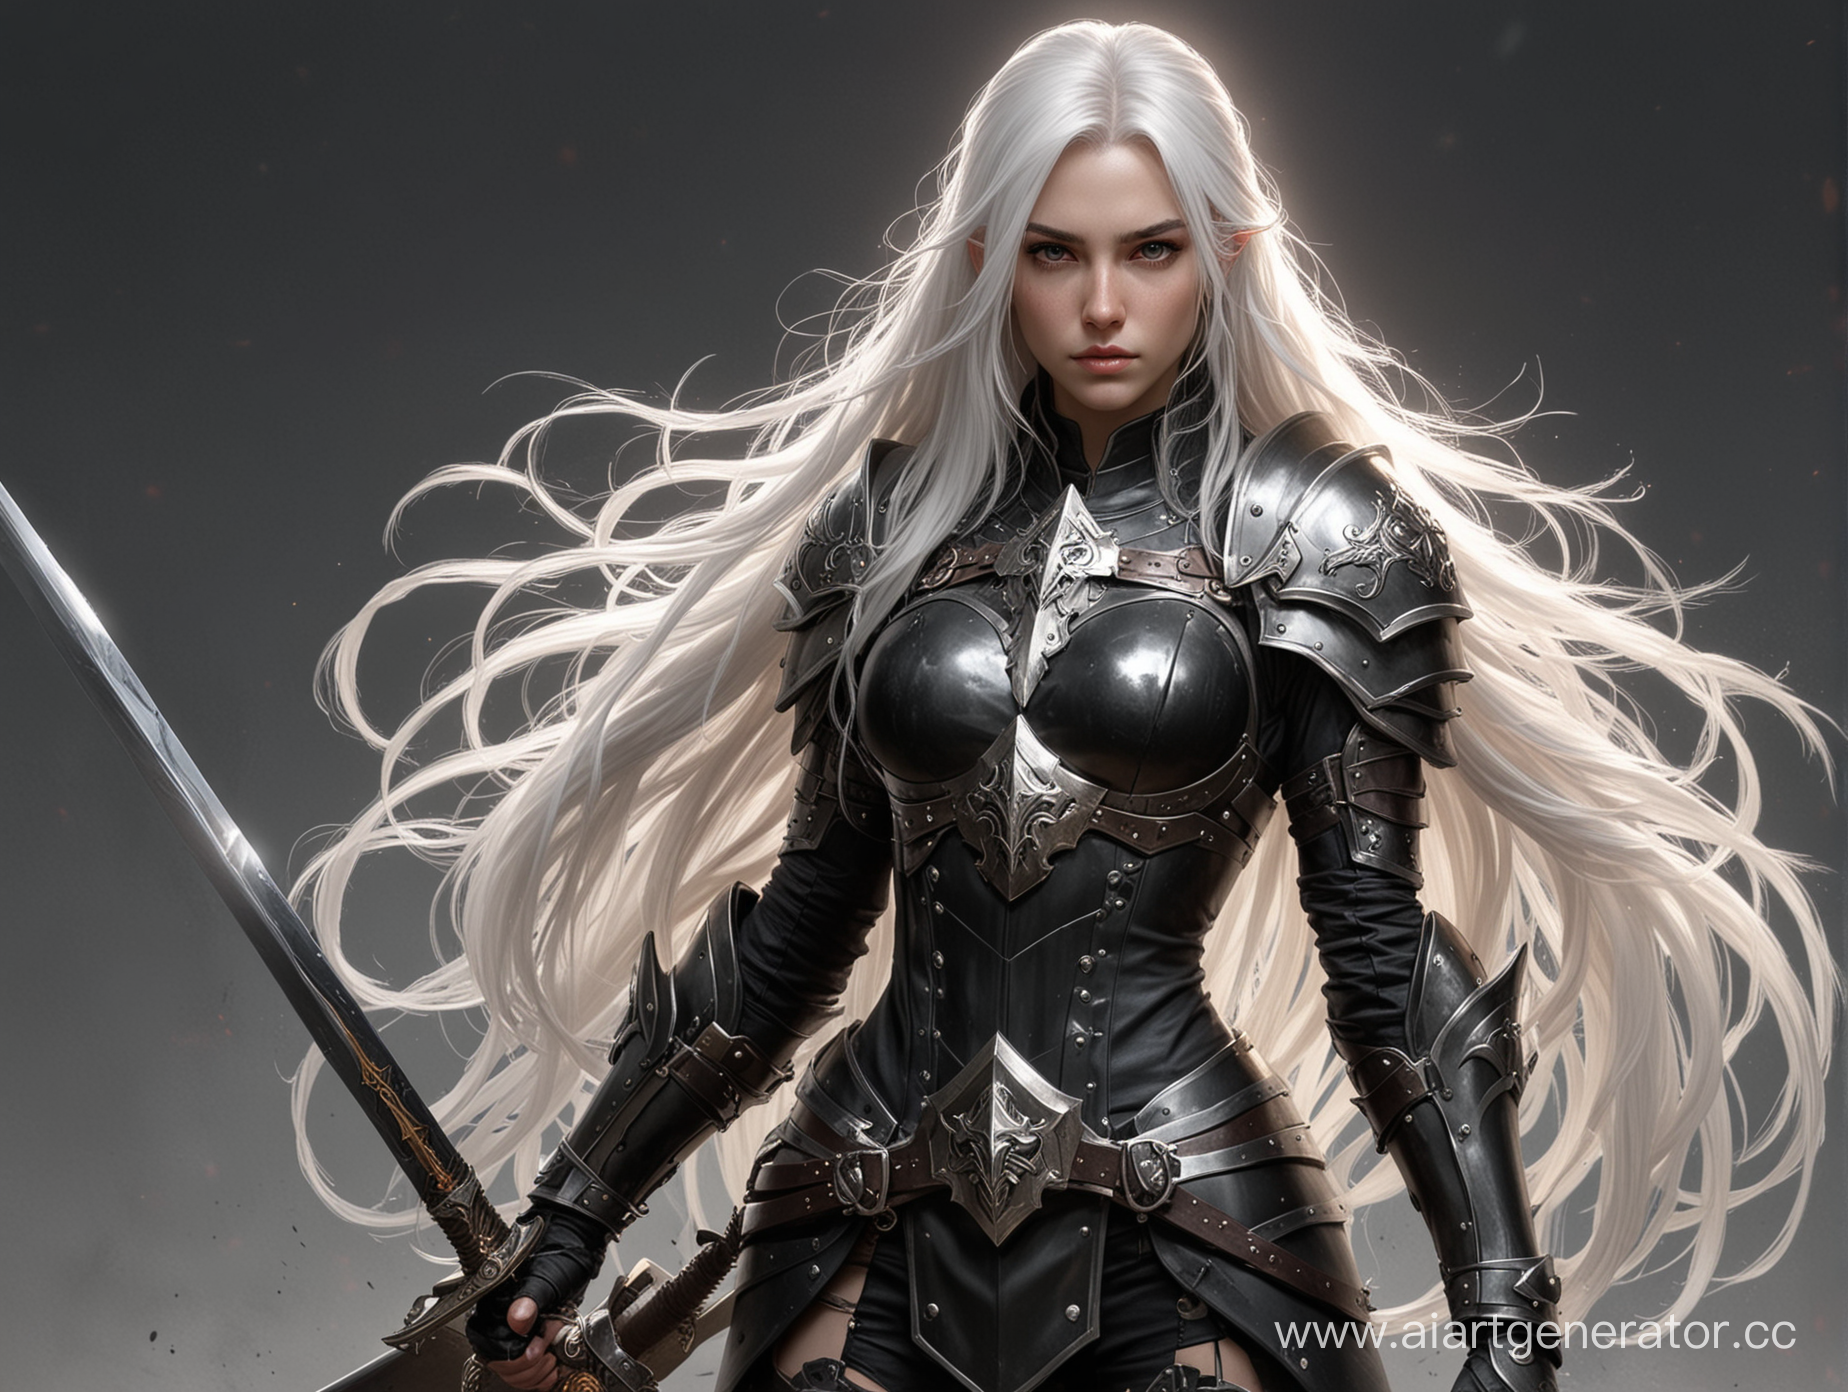 Девушка паладин в черных доспехах, длинные белые волосы, в руках меч и щит, взгляд серьезный